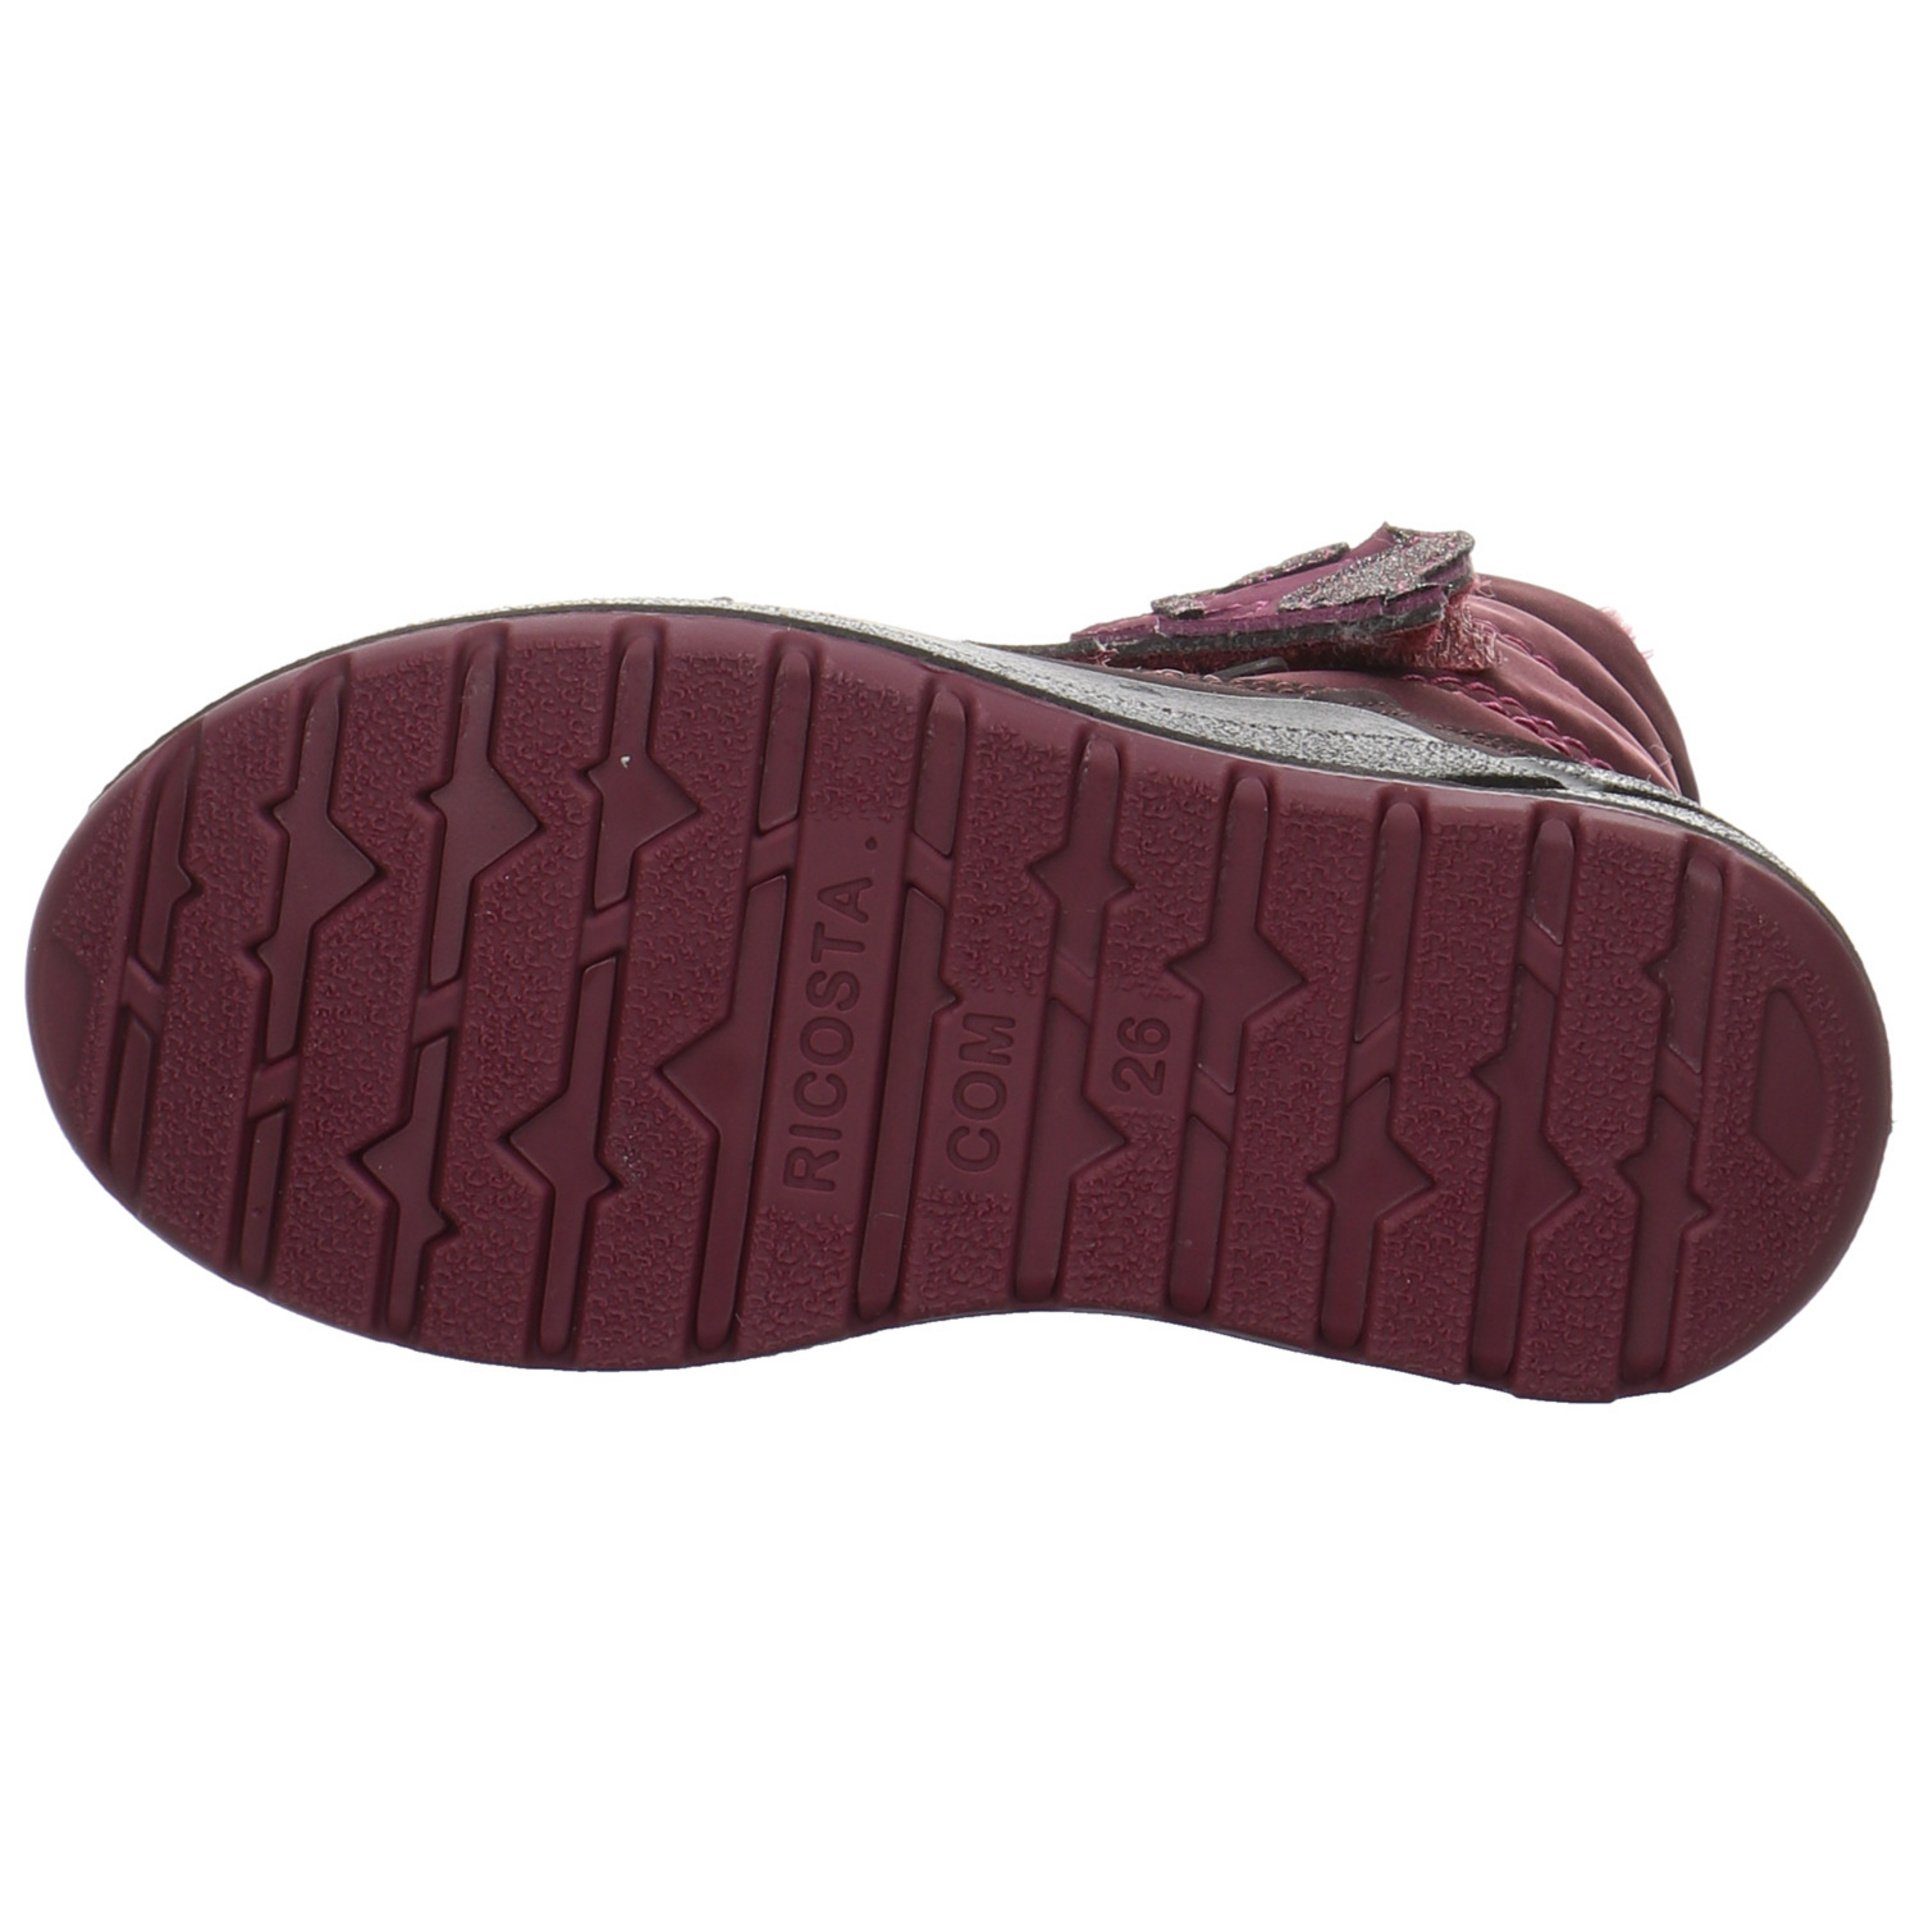 Ricosta Garei Boots Textil Bordeaux uni Textil Stiefel